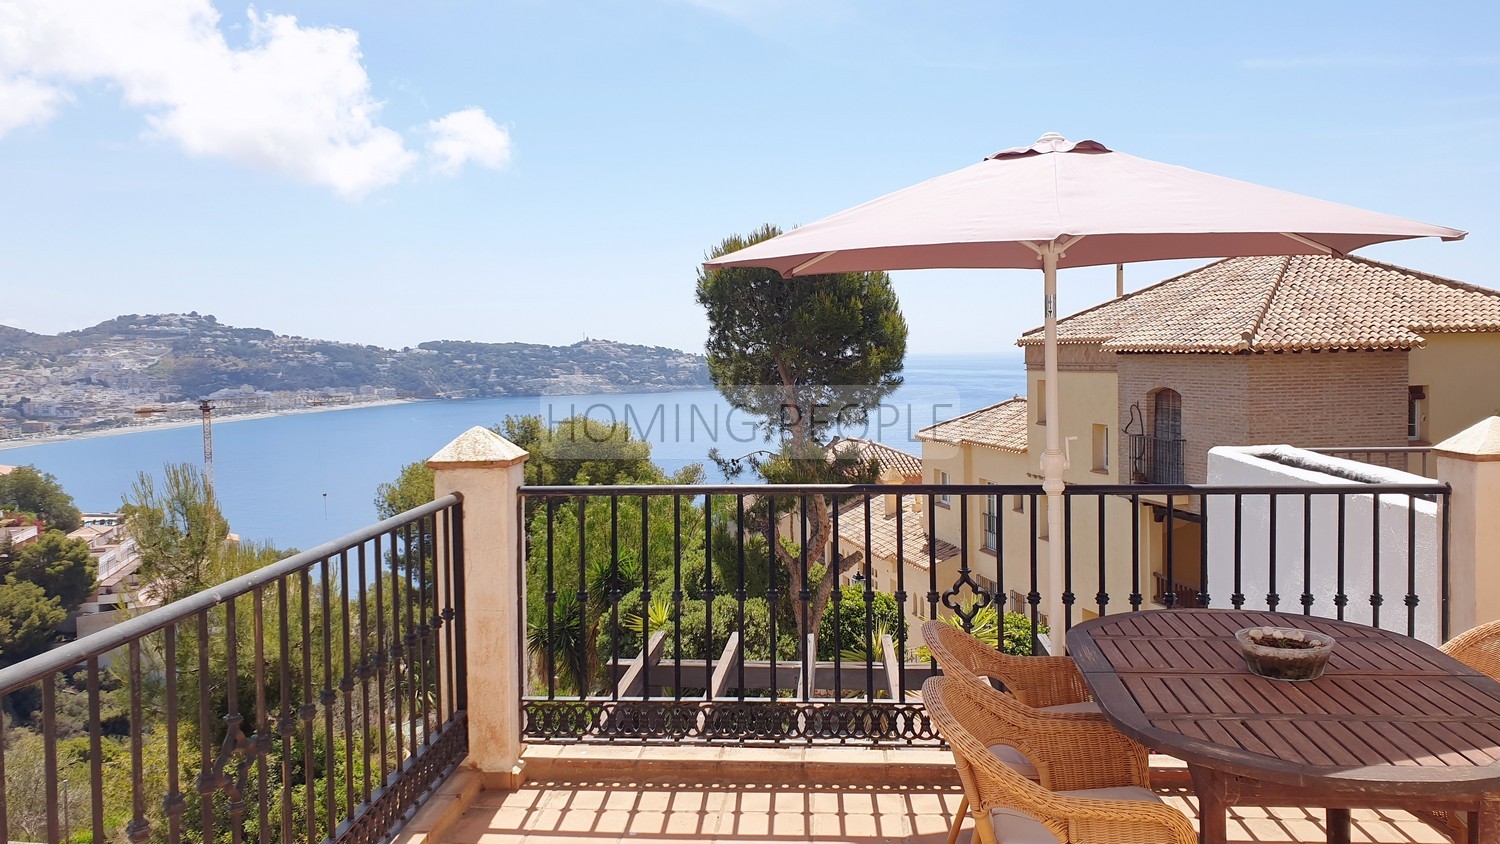 Casa familiar luminosa, con terrazas, aparcamiento privado... y unas preciosas vistas a la bahía !